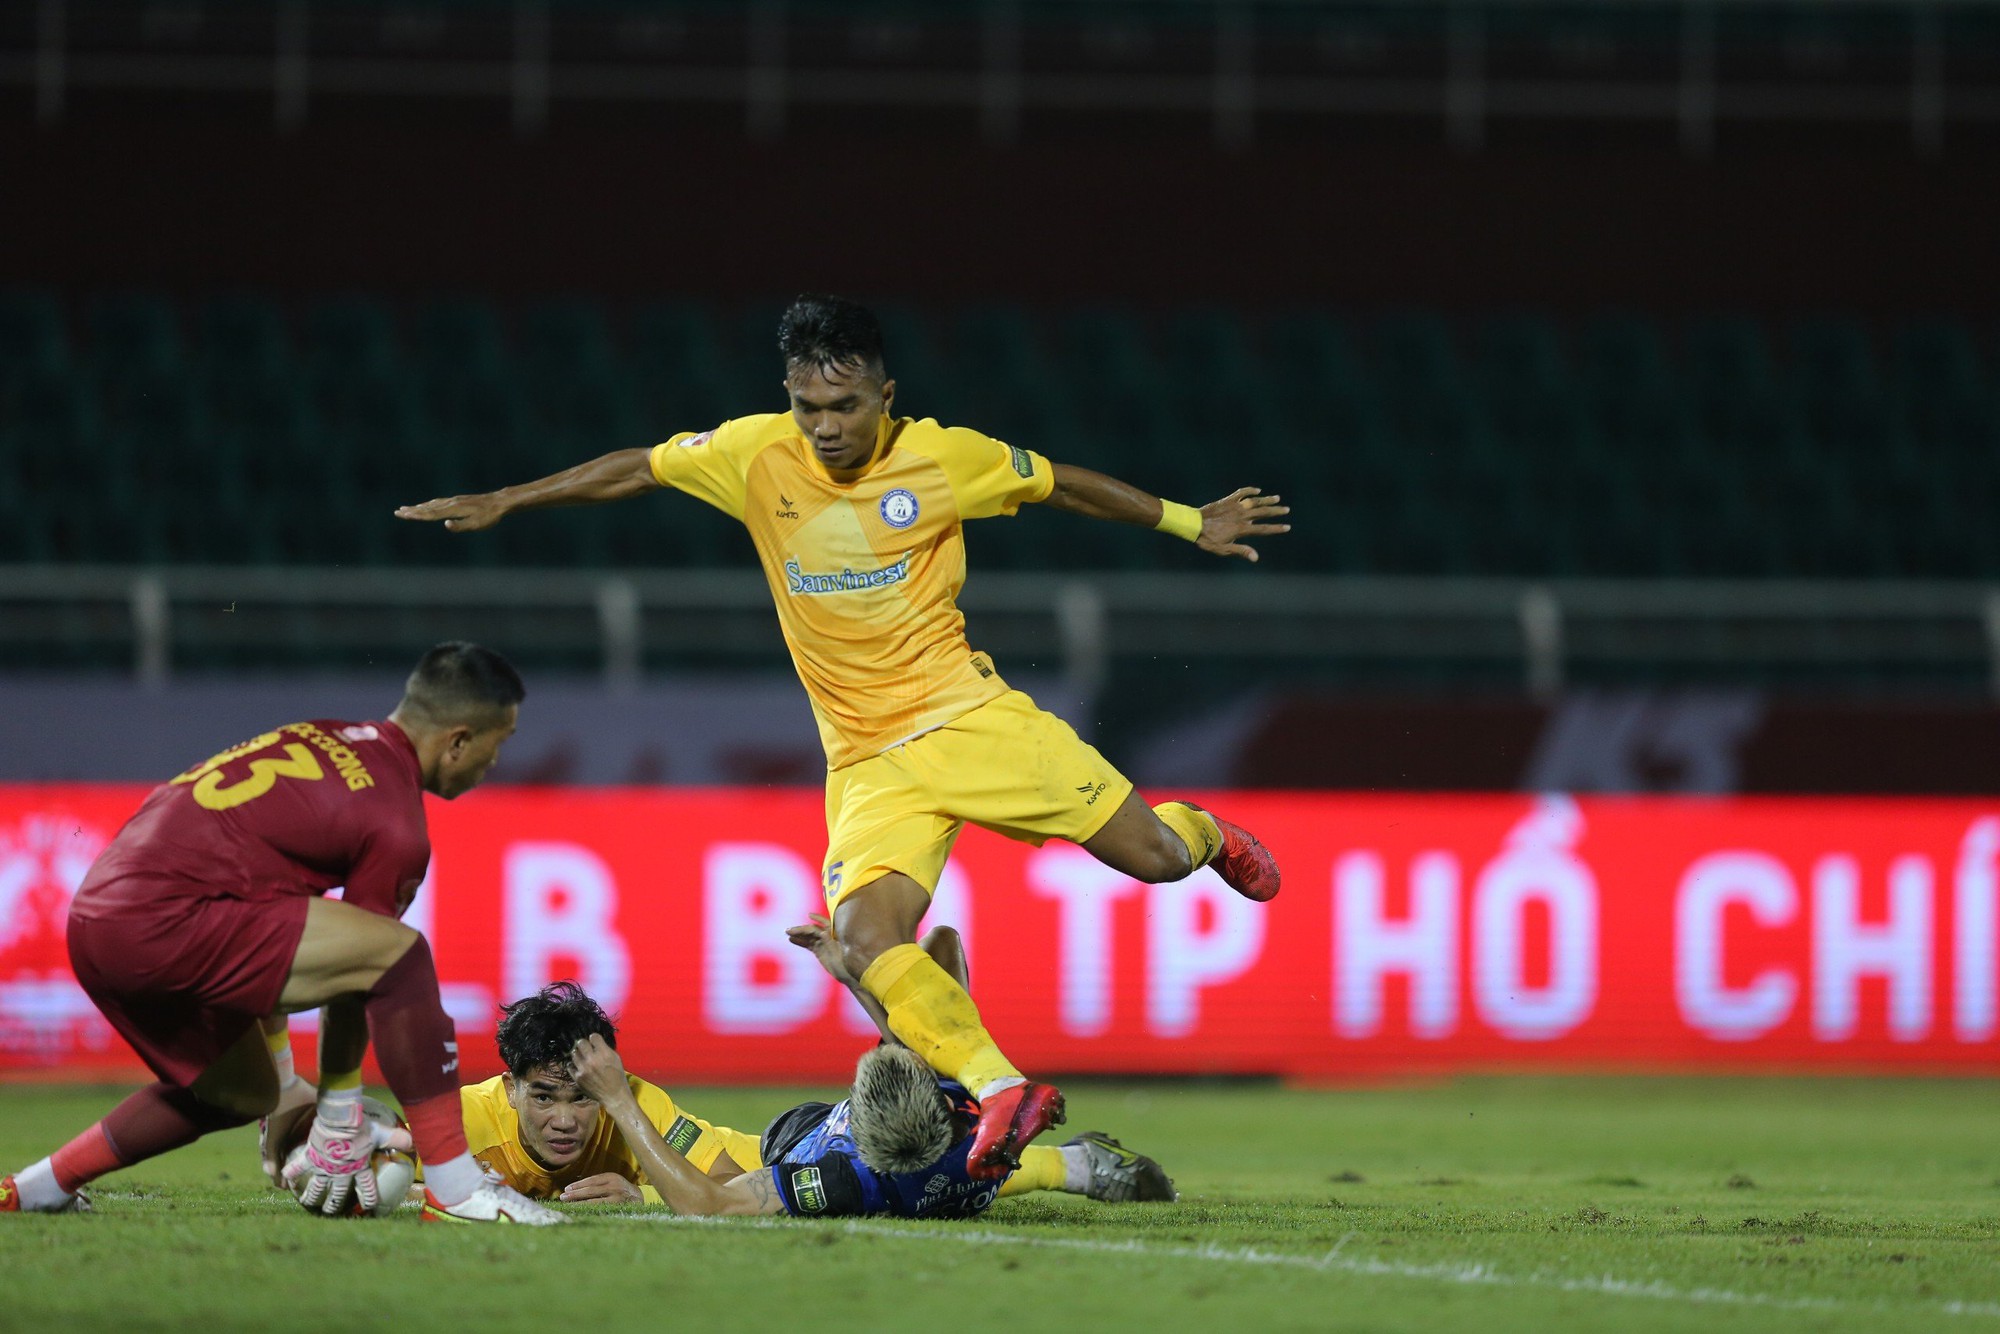 'Bom' được gỡ phút chót, CLB Khánh Hòa không bỏ V-League - Ảnh 1.